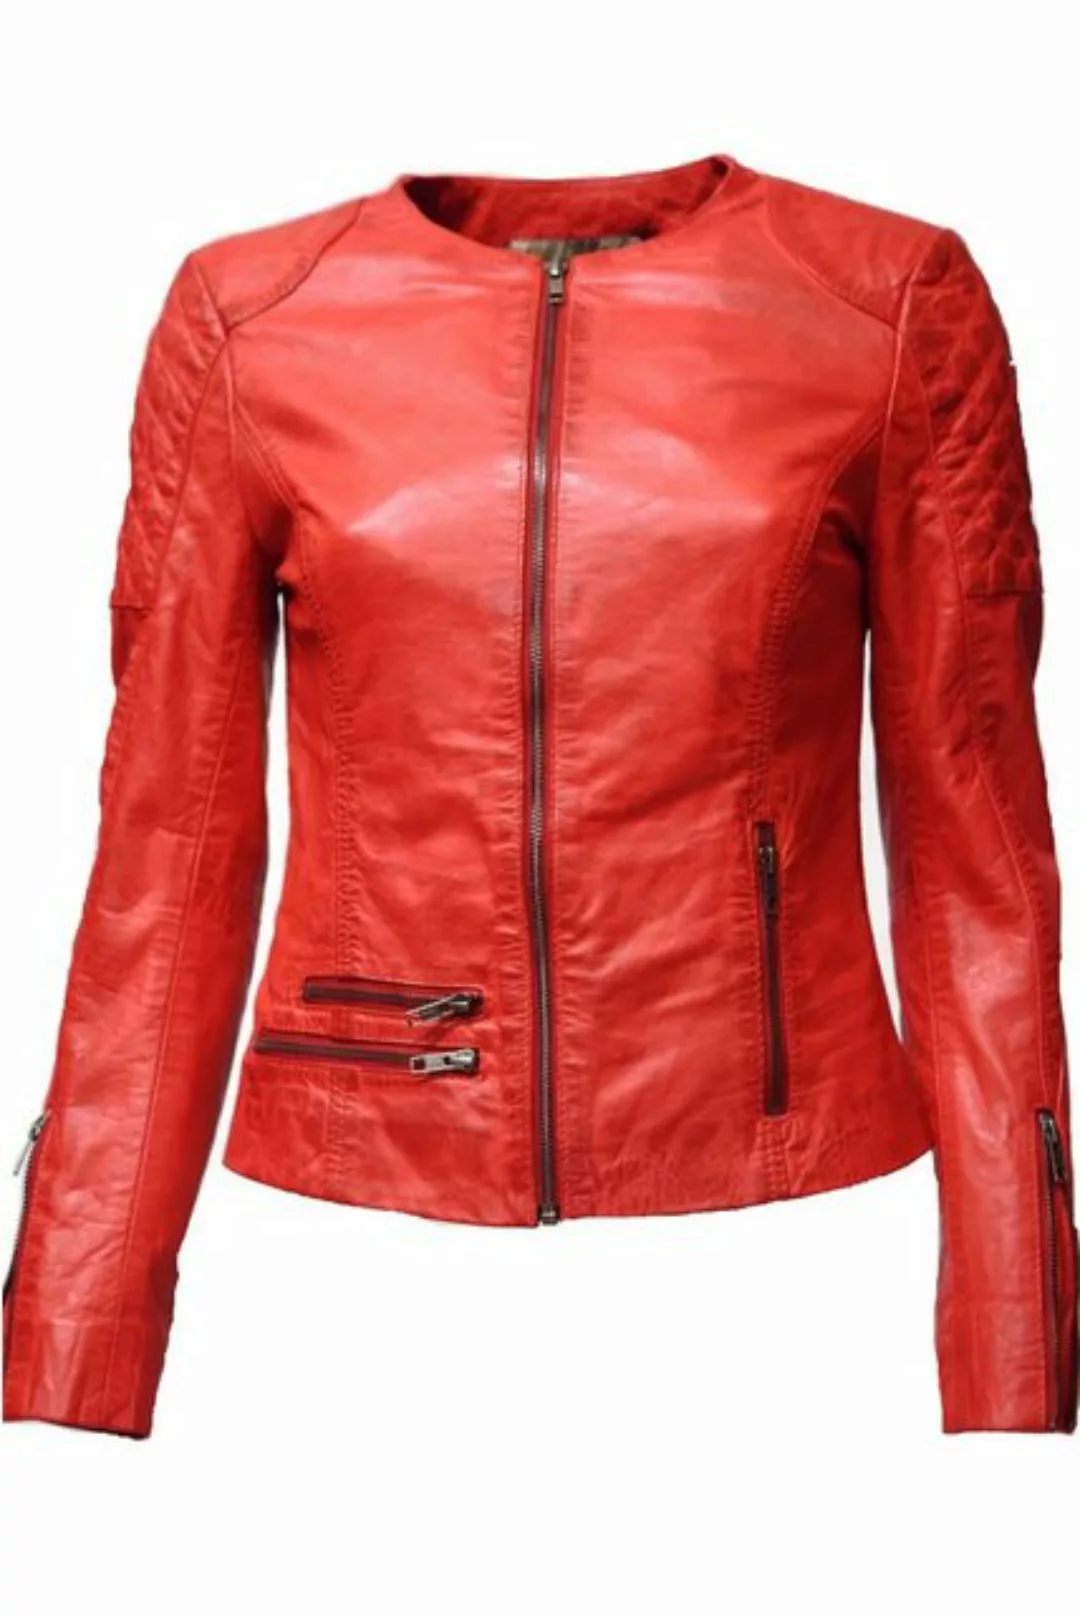 Zimmert Leather Lederjacke Lisa günstig online kaufen